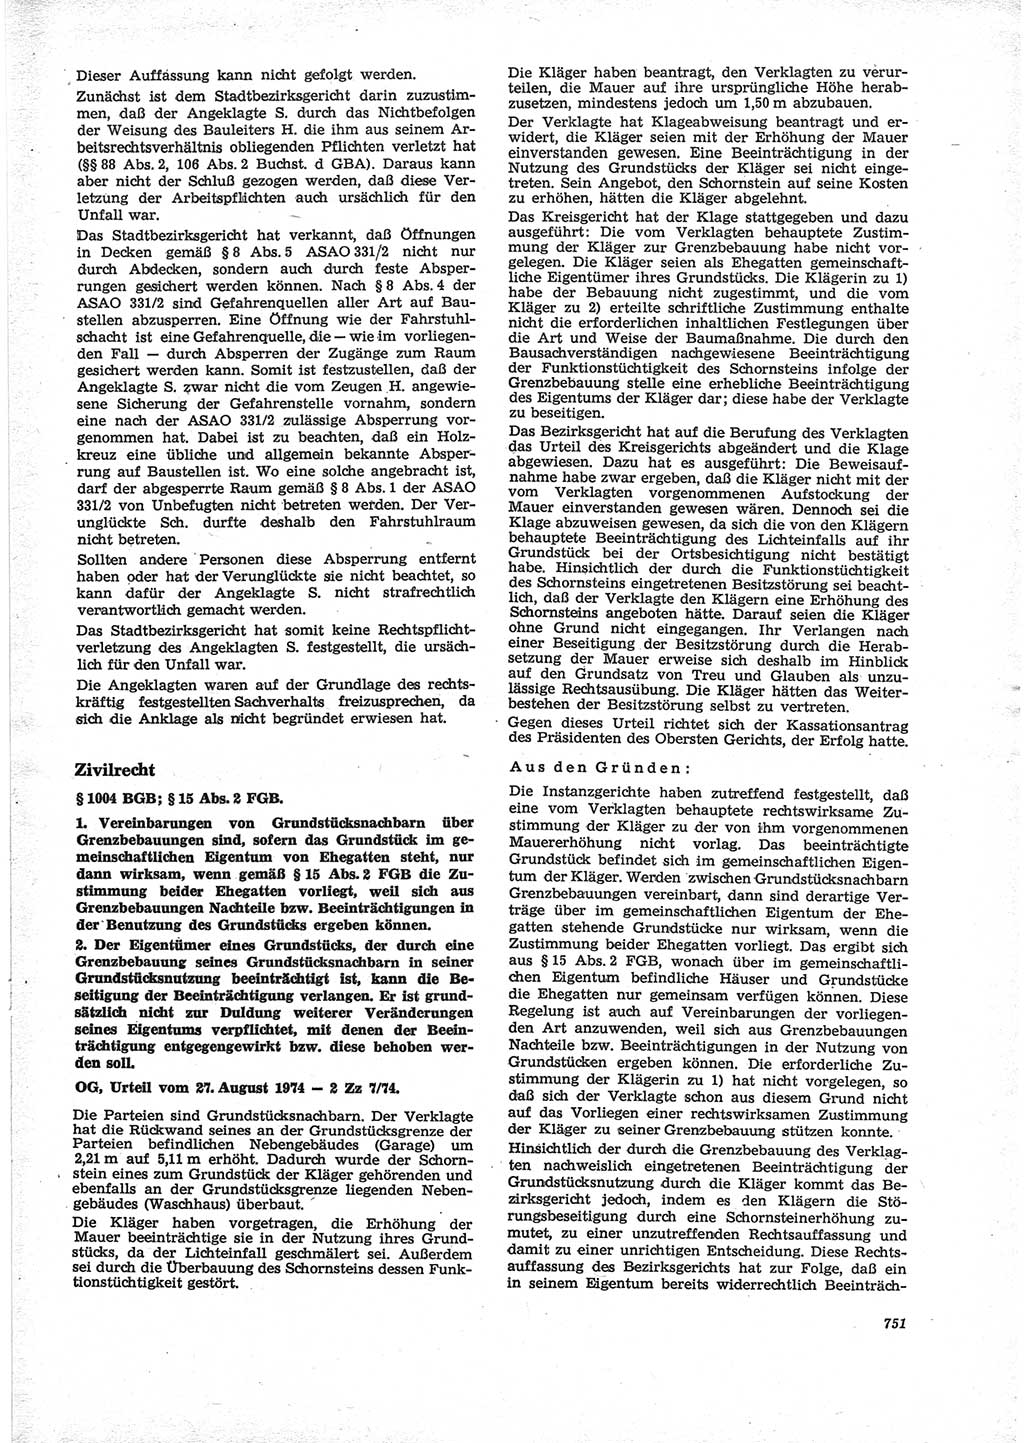 Neue Justiz (NJ), Zeitschrift für Recht und Rechtswissenschaft [Deutsche Demokratische Republik (DDR)], 28. Jahrgang 1974, Seite 751 (NJ DDR 1974, S. 751)